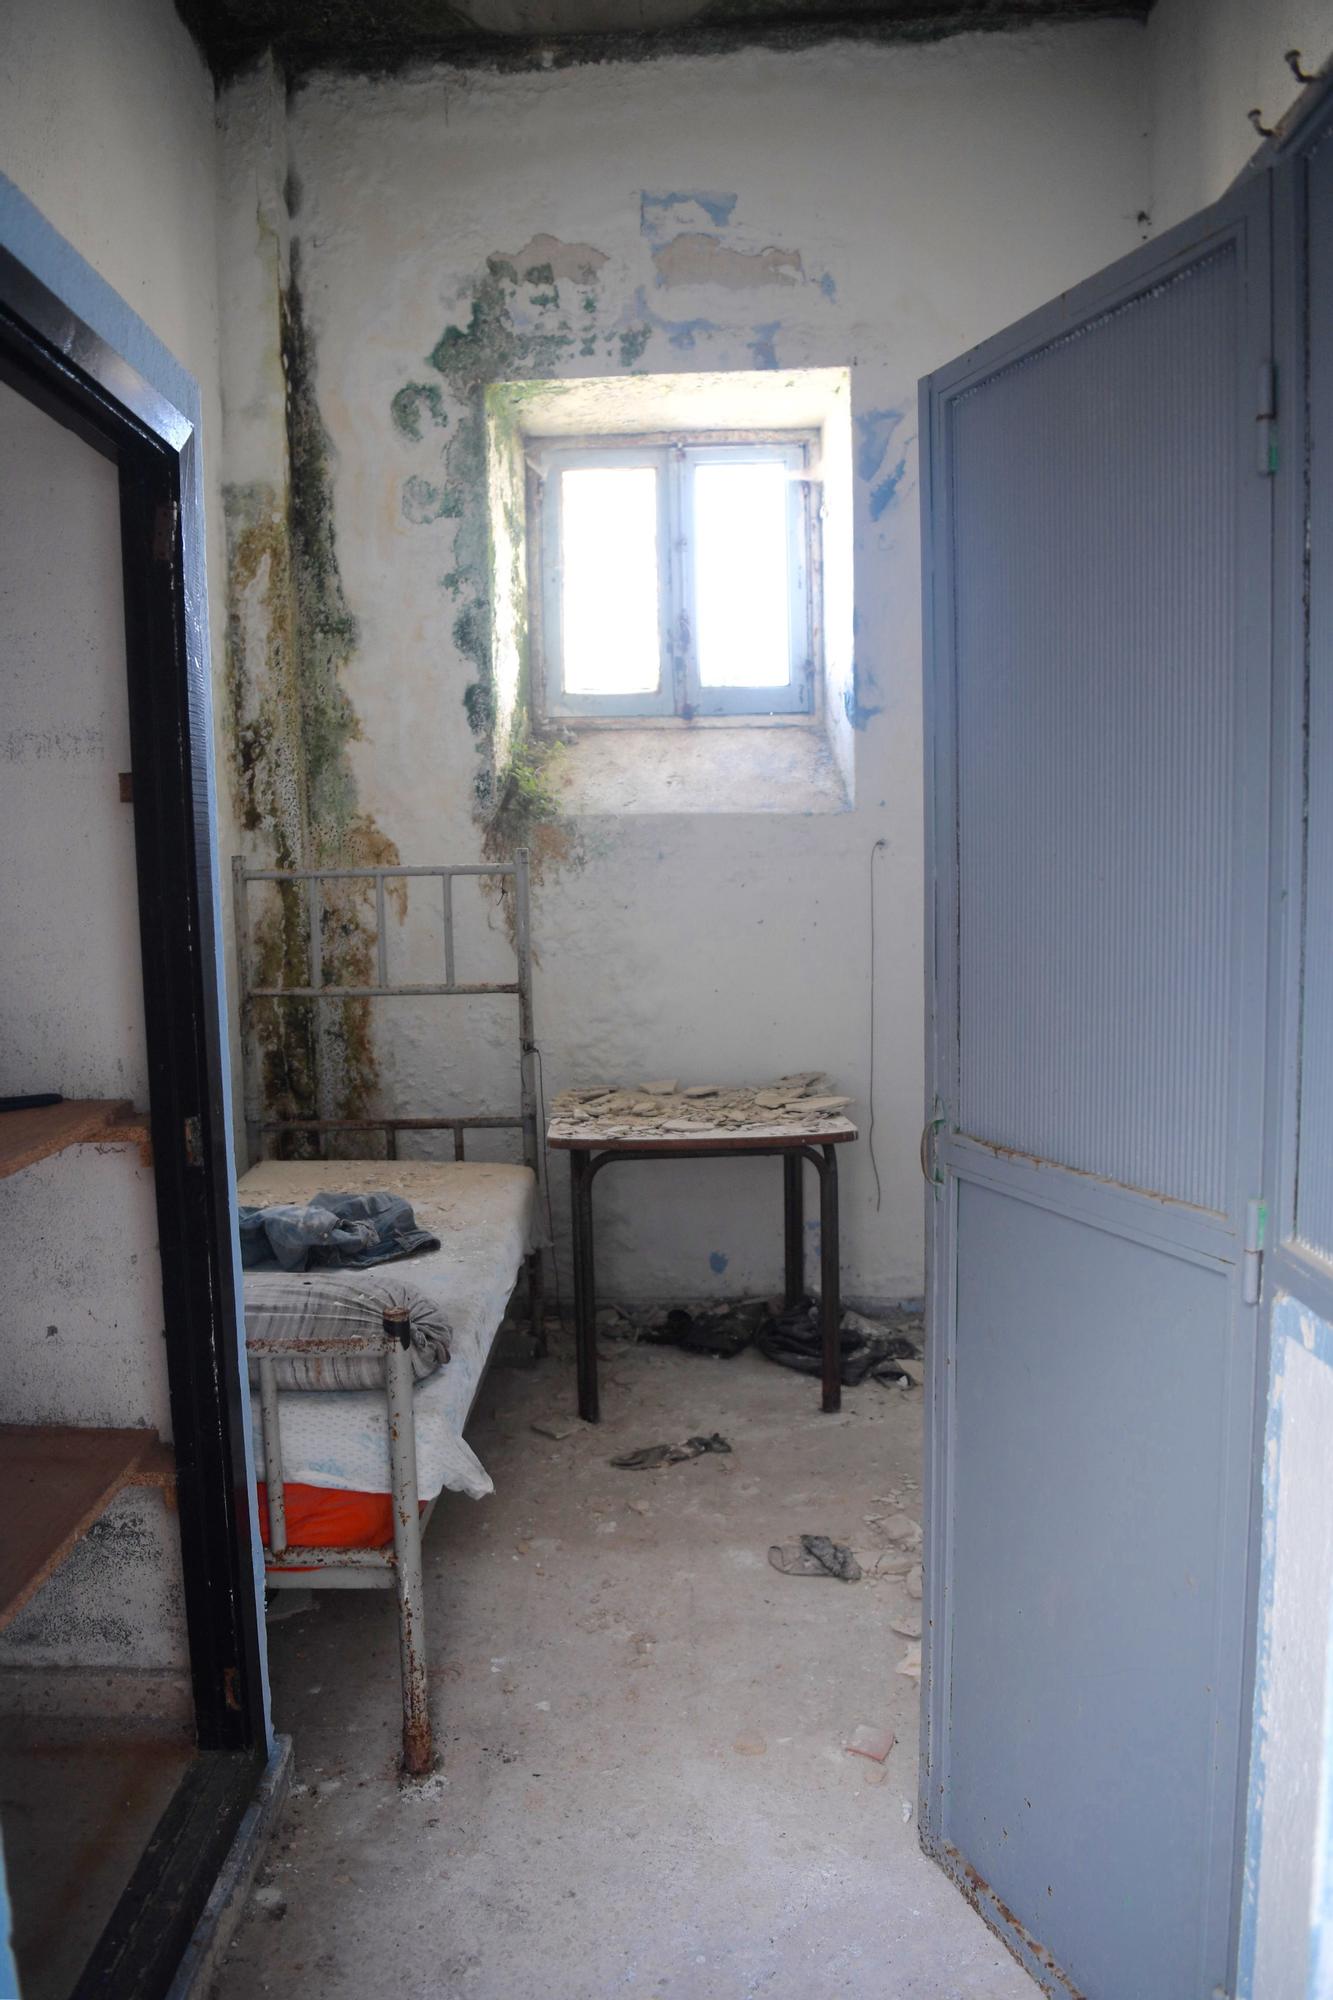 Pintadas, suciedad y abandono en la antigua cárcel provincial de A Coruña